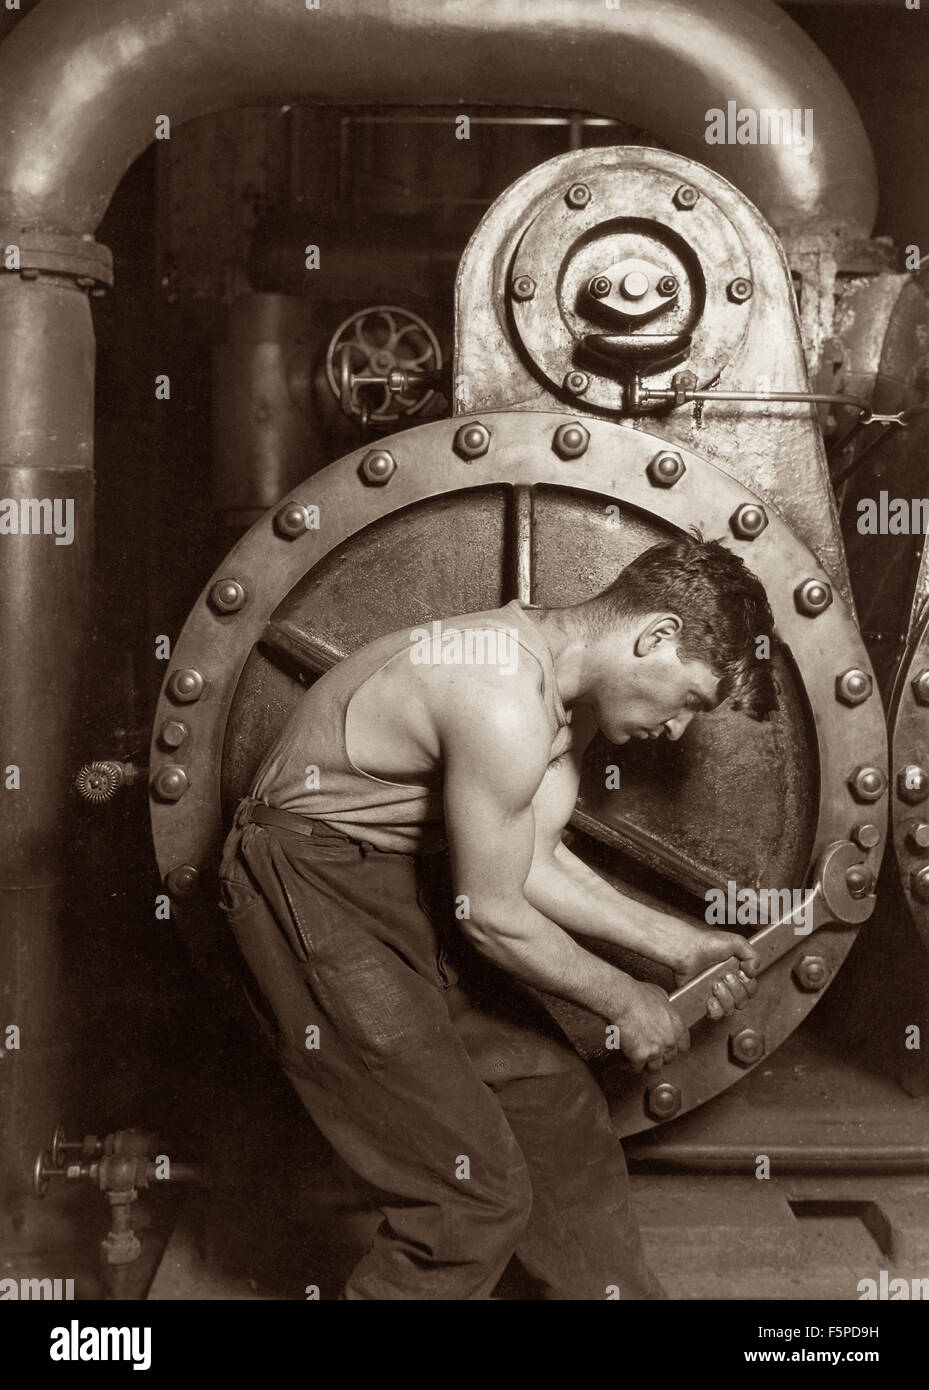 Classic 1920 Foto von Lewis Wickes Hine eines macht-Haus-Mechaniker arbeiten auf eine Dampfpumpe. Stockfoto